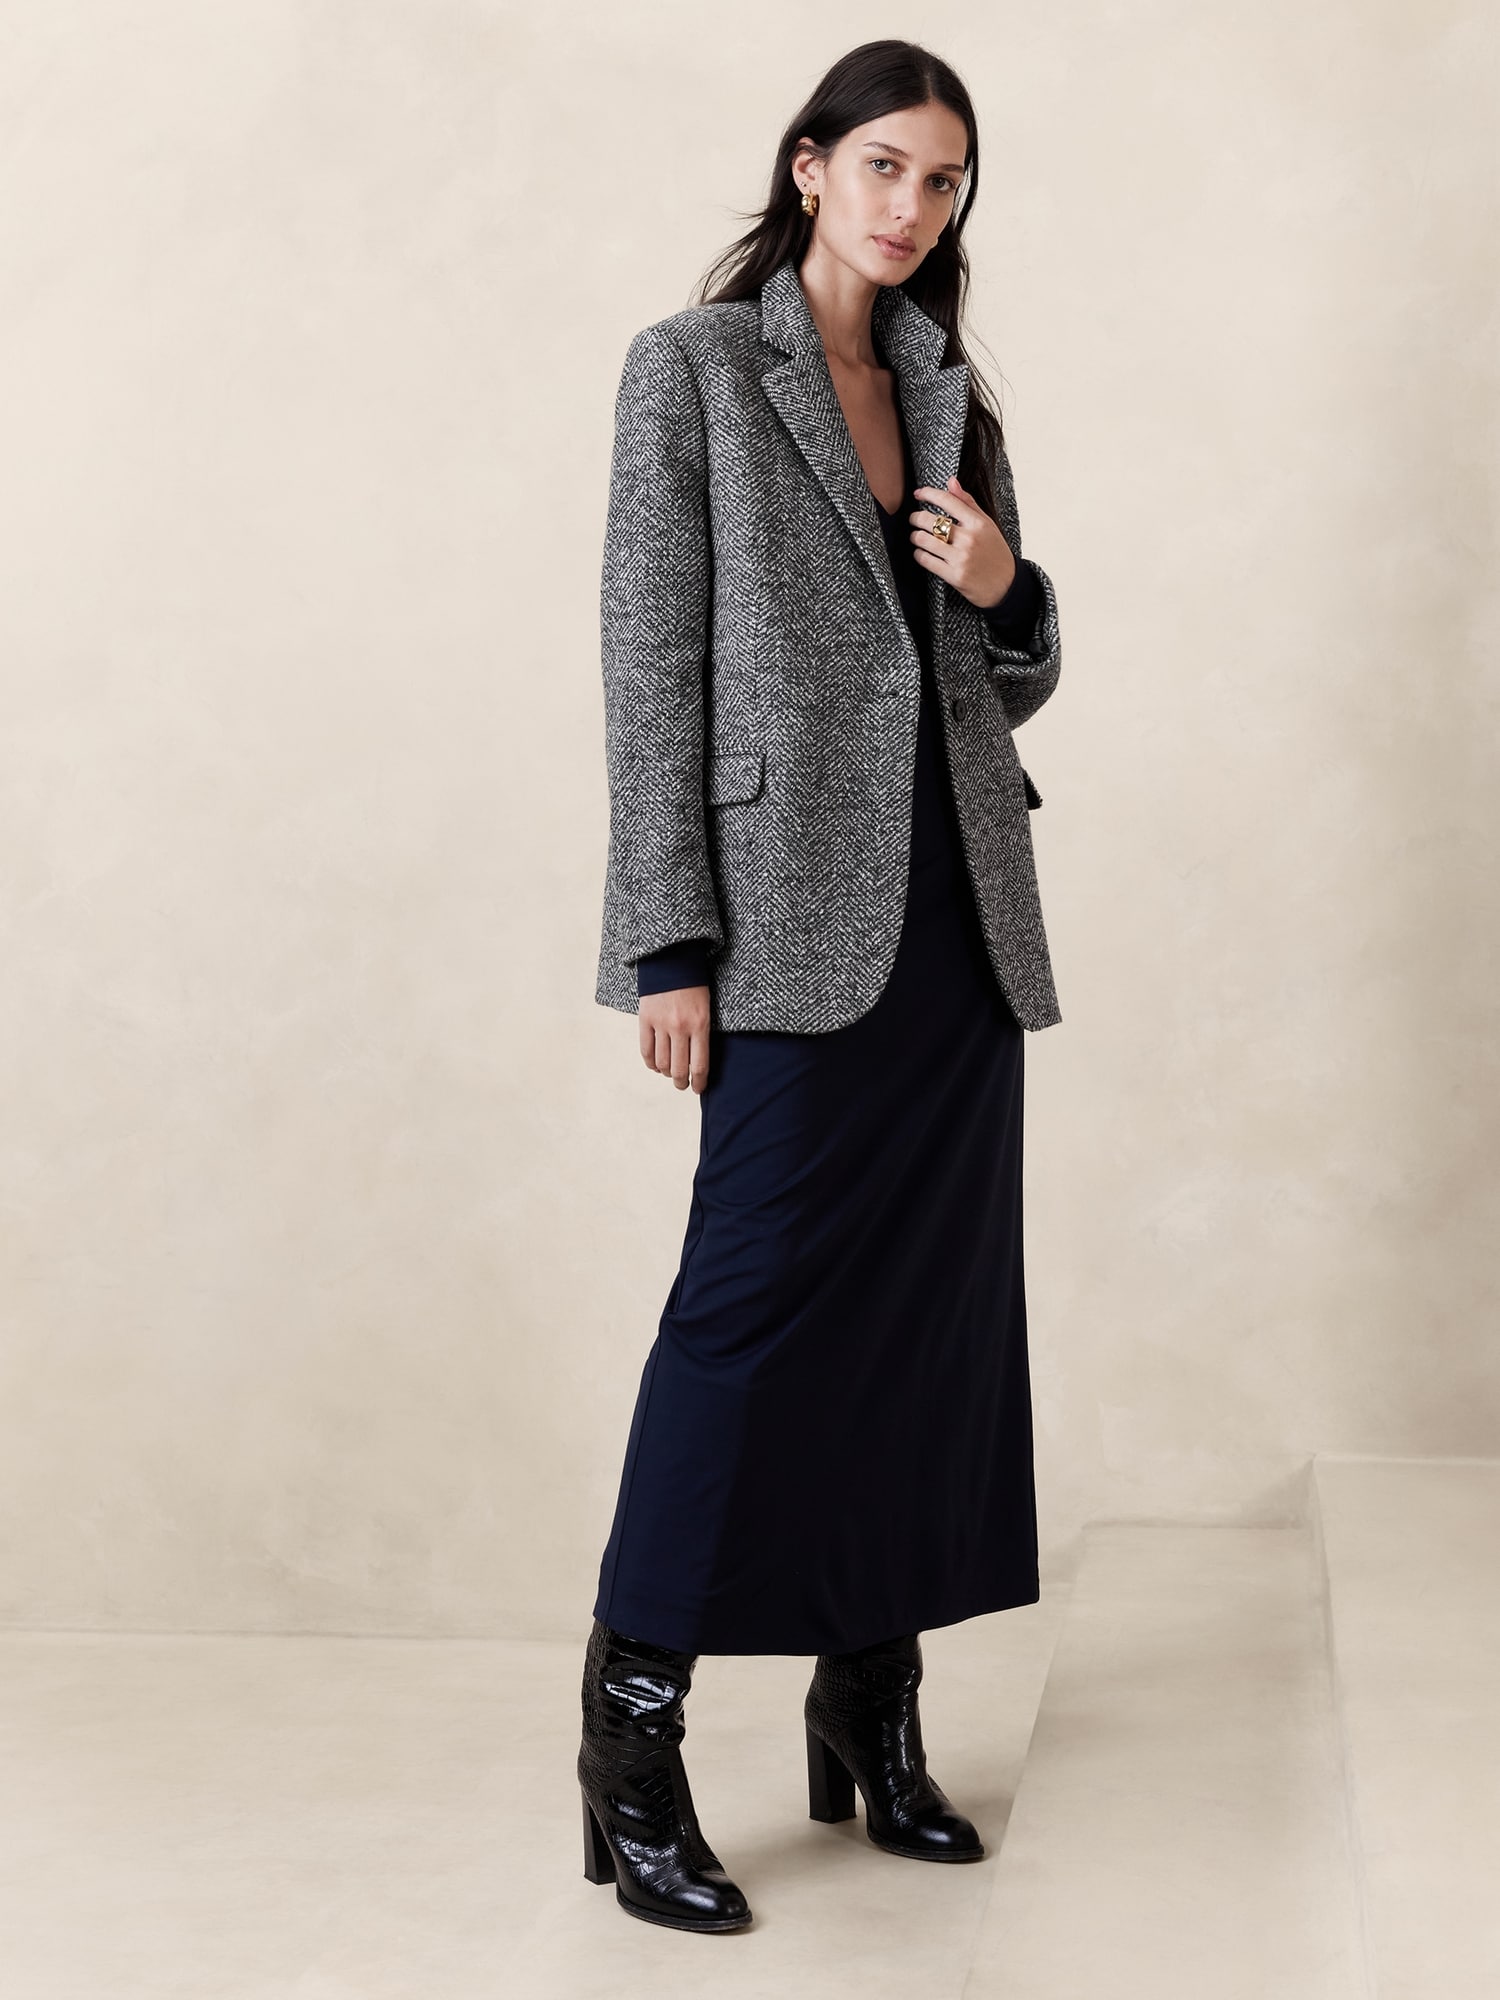 Check herringbone tweed jacket Berlin fit - Regular, Le 31